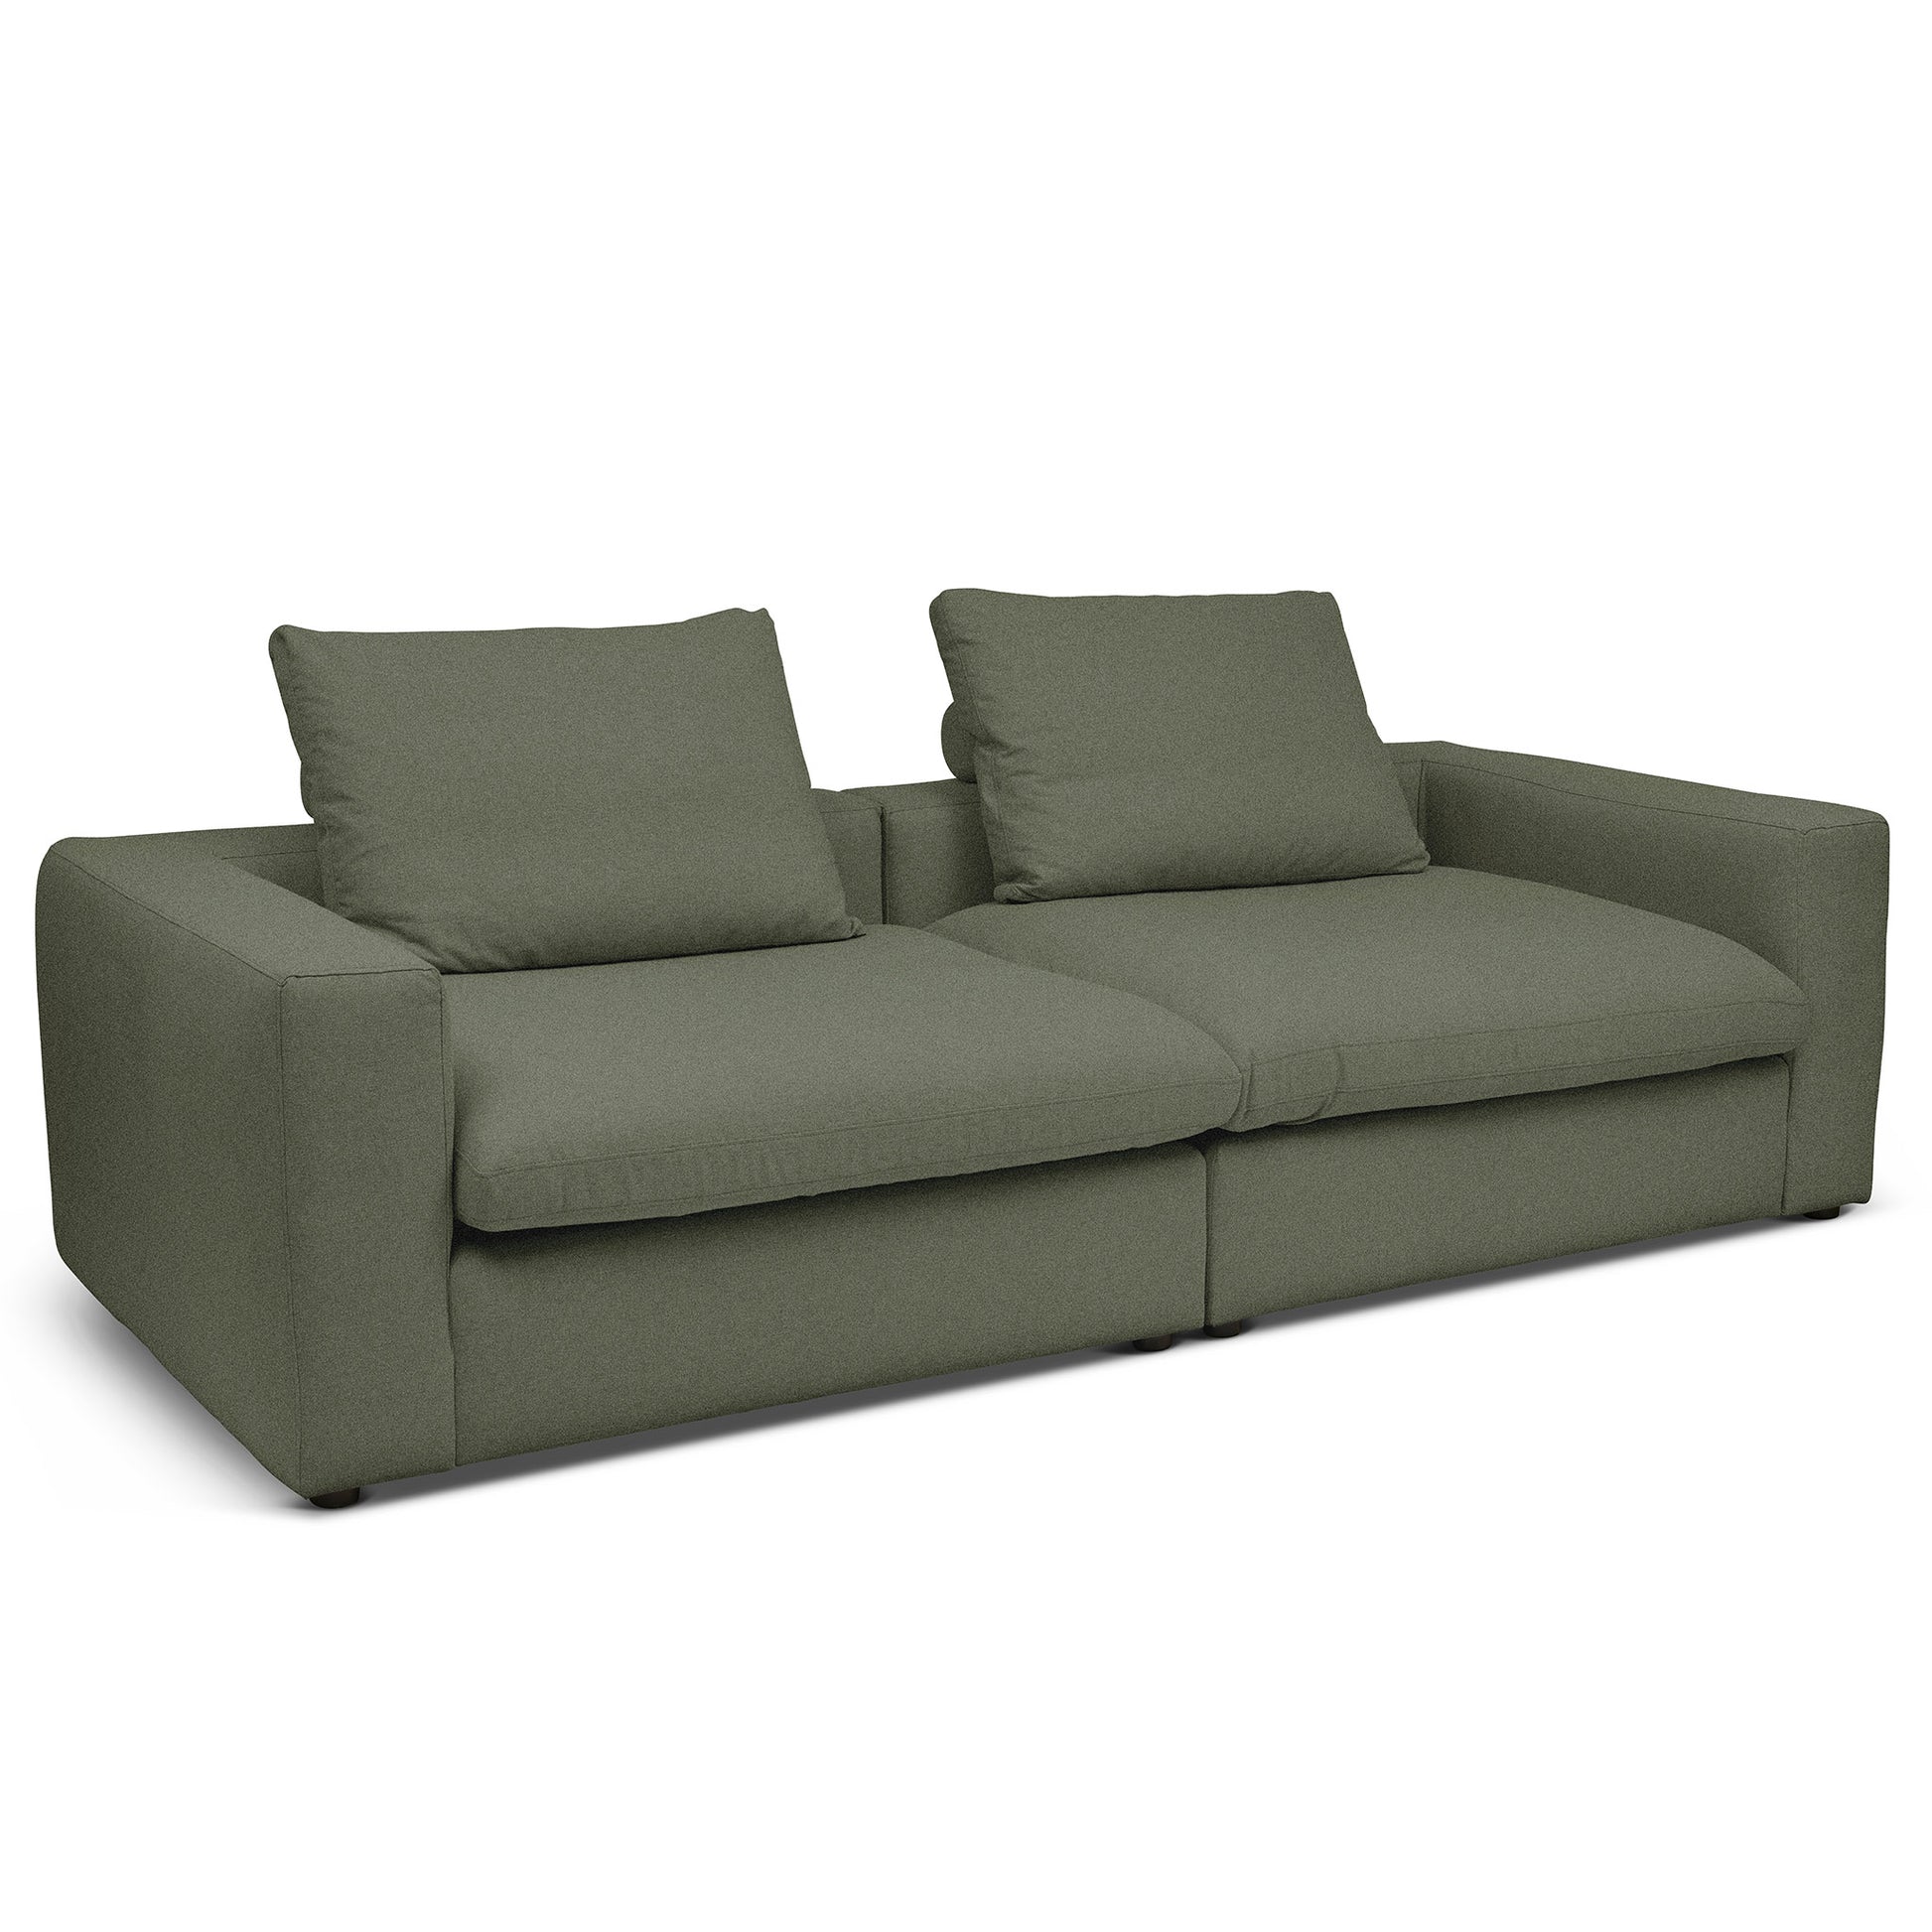 Extra djup 4-sits soffa i grön färg. Palazzo är en byggbar modulsoffa